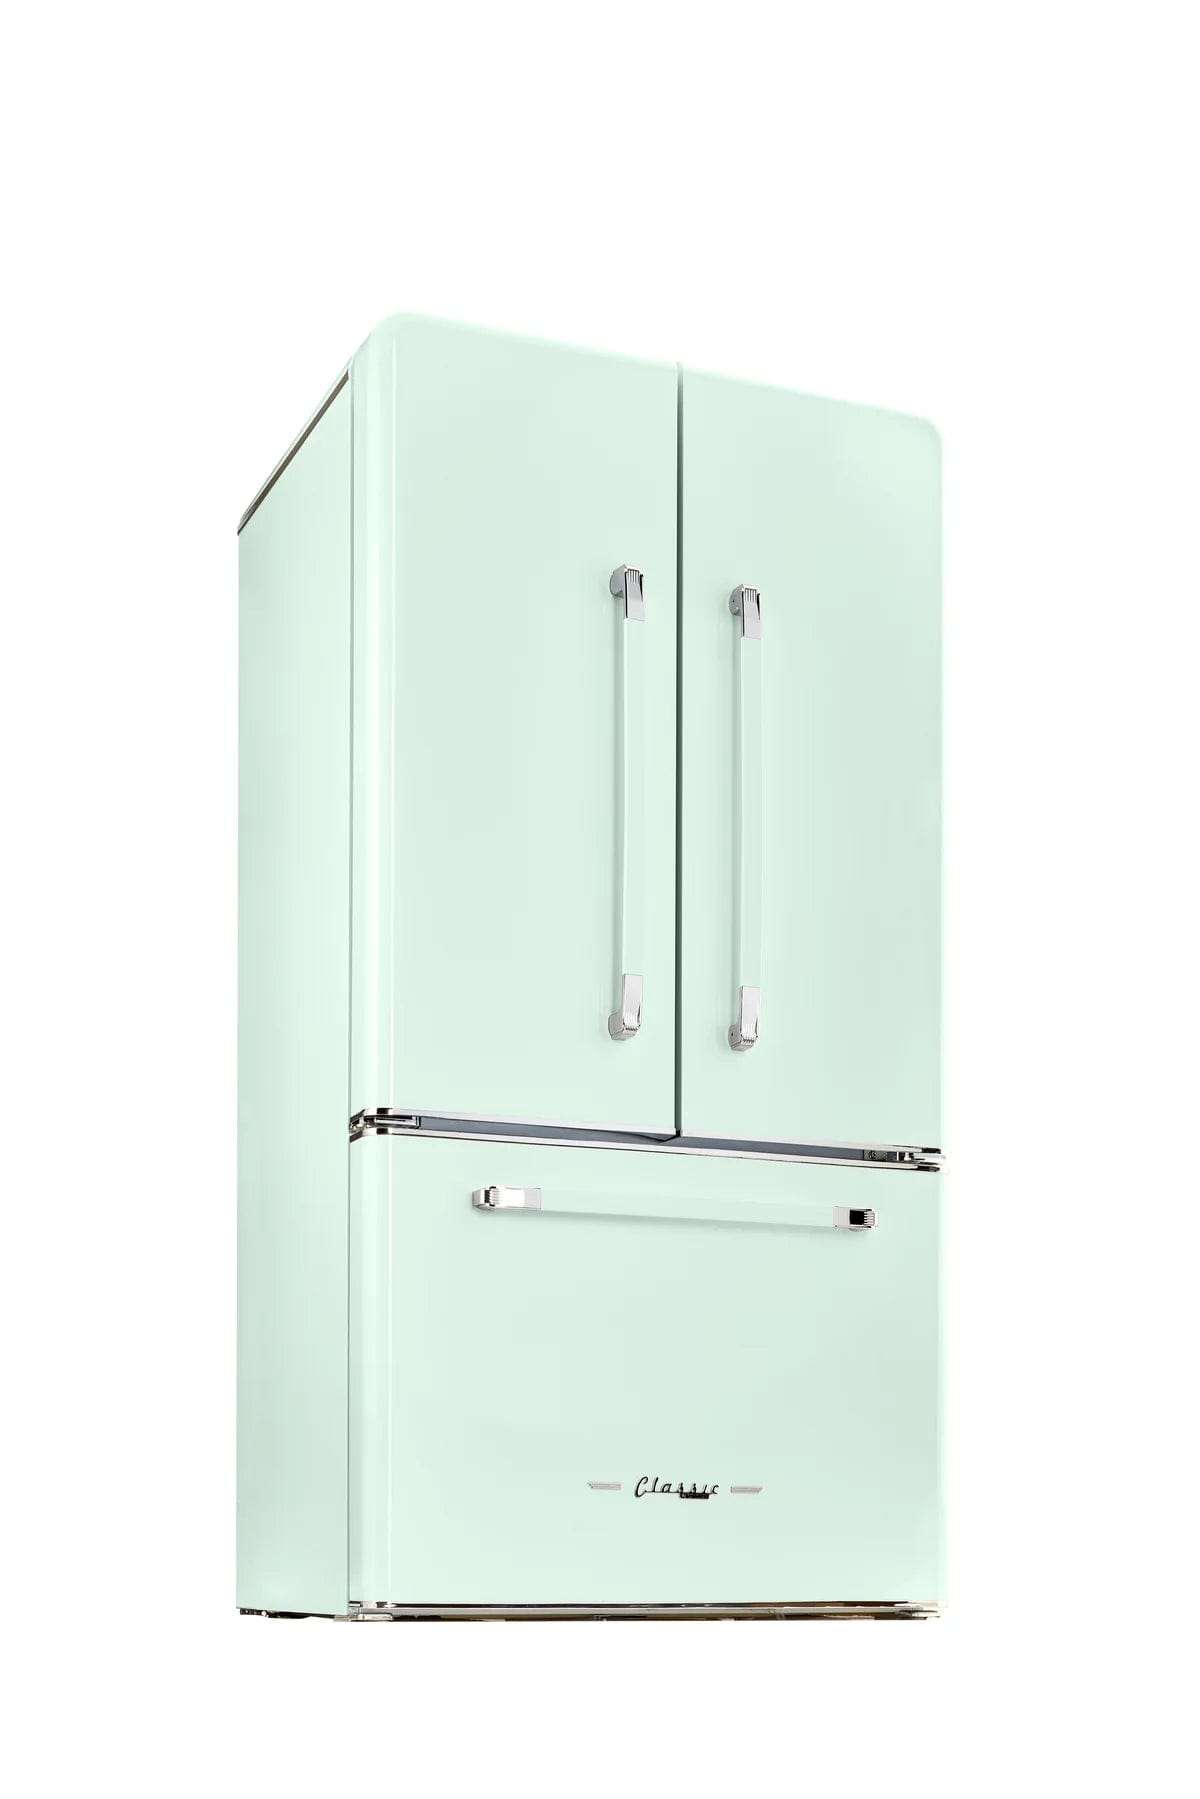 Unique Refrigerator-Freezer Unique 595Litre Summer Mint Green French Door Refrigerator UGP-595L LG AC